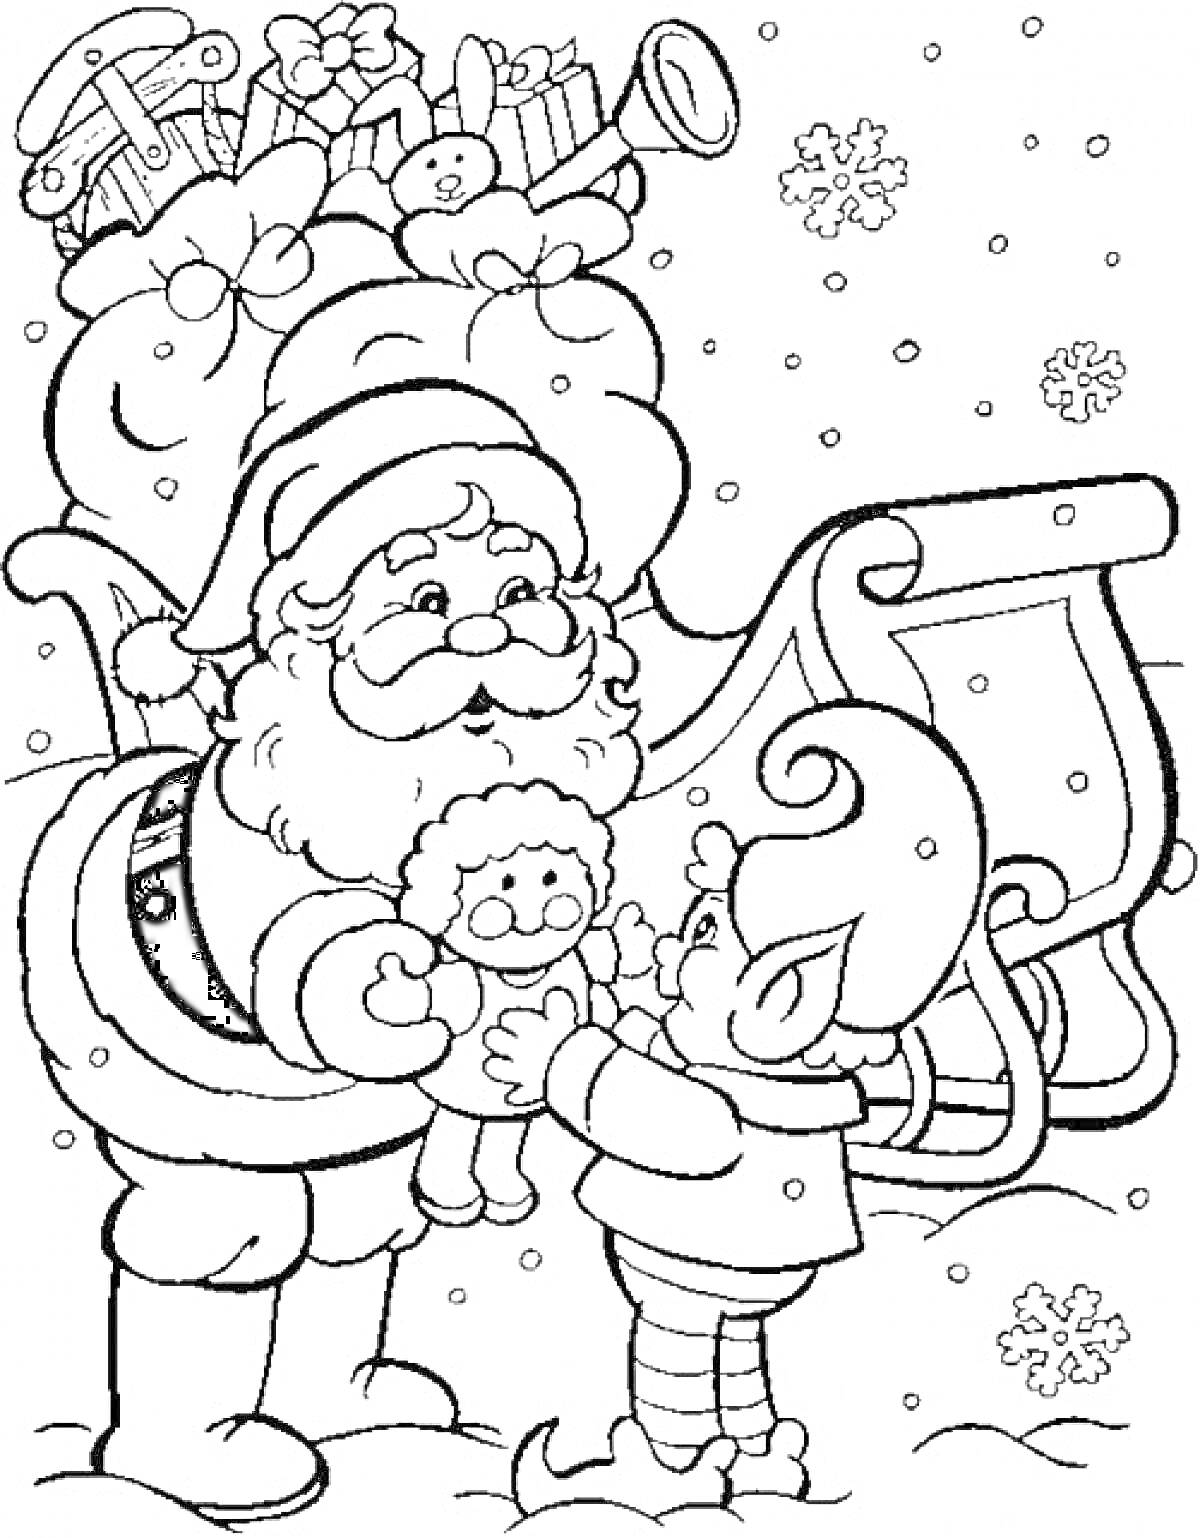 Раскраска Санта Клаус и эльф рядом с упряжкой, с мешком подарков и снегом